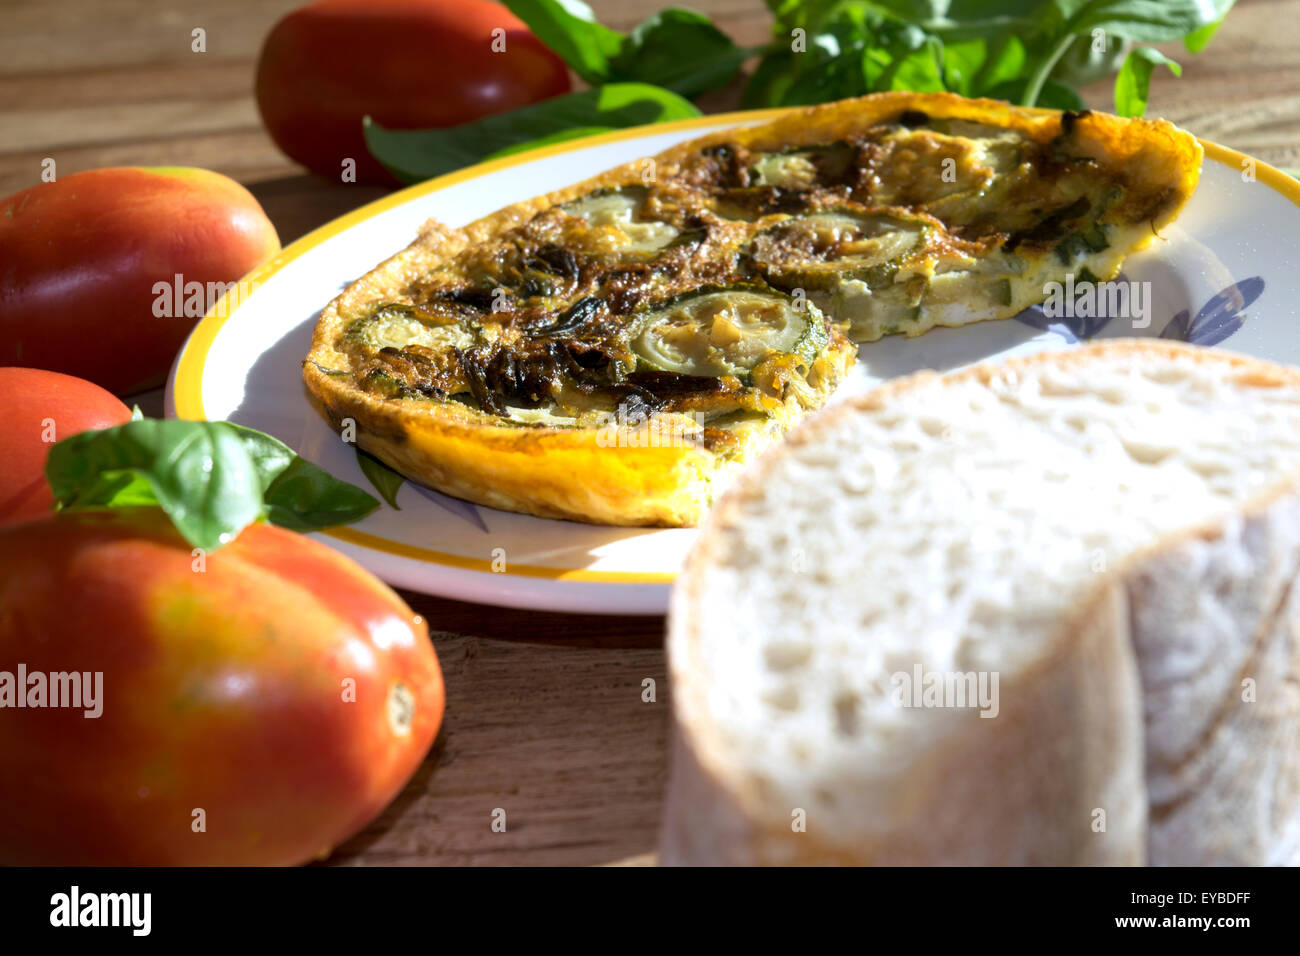 Frittata di zucchine su una tavola apparecchiata con un po' di pane e di altri ortaggi Foto Stock